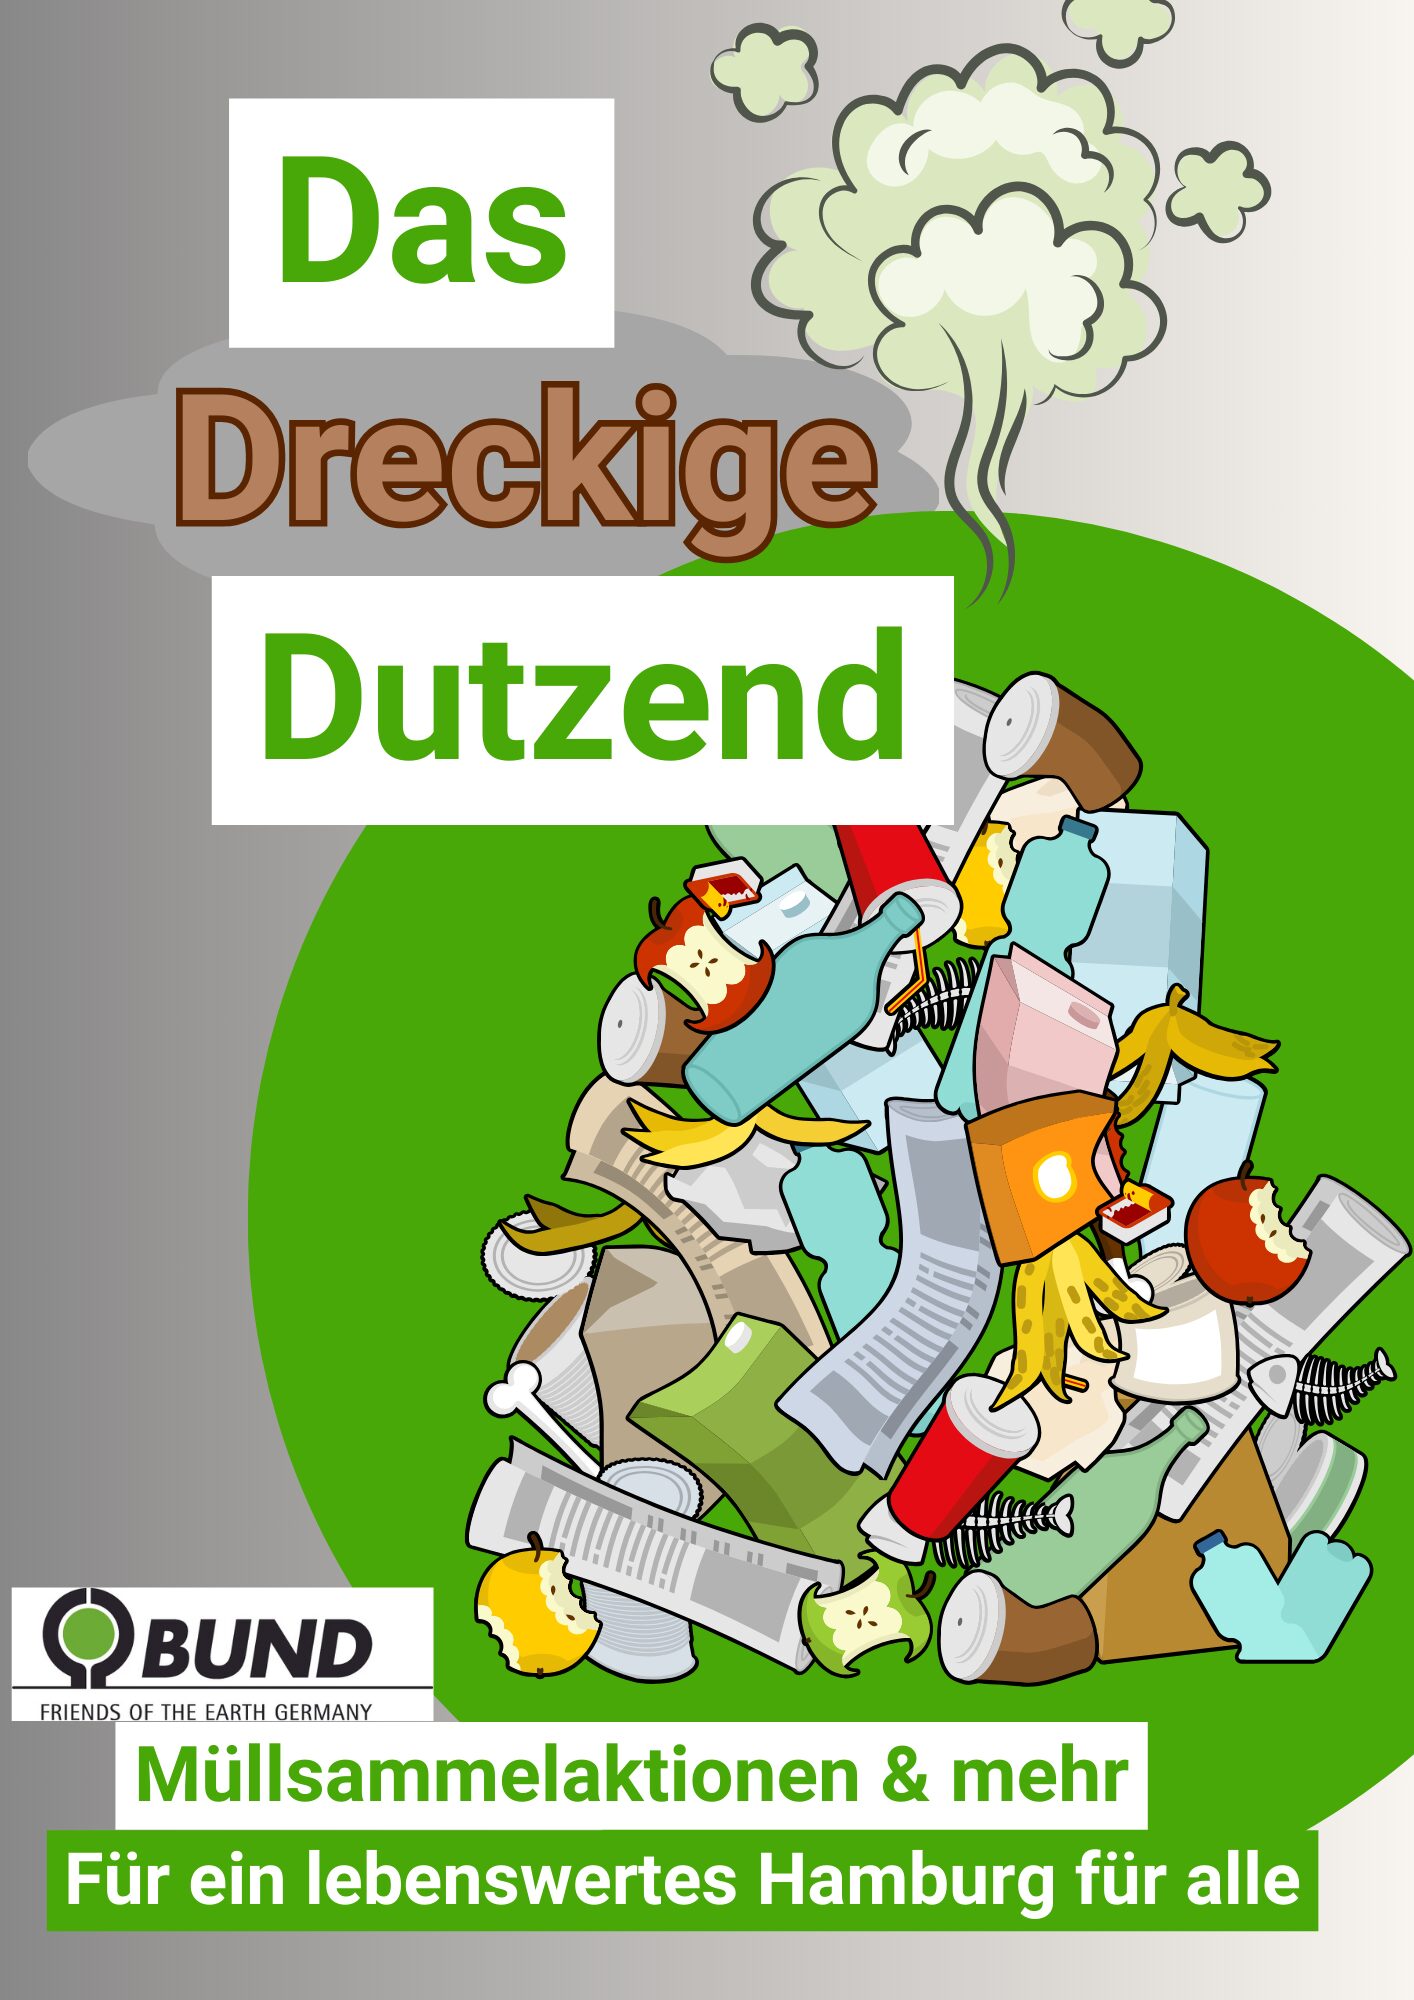 BUND-Aktion: Dreckiges Dutzend für sauberes Alsterwasser (Hamburg)